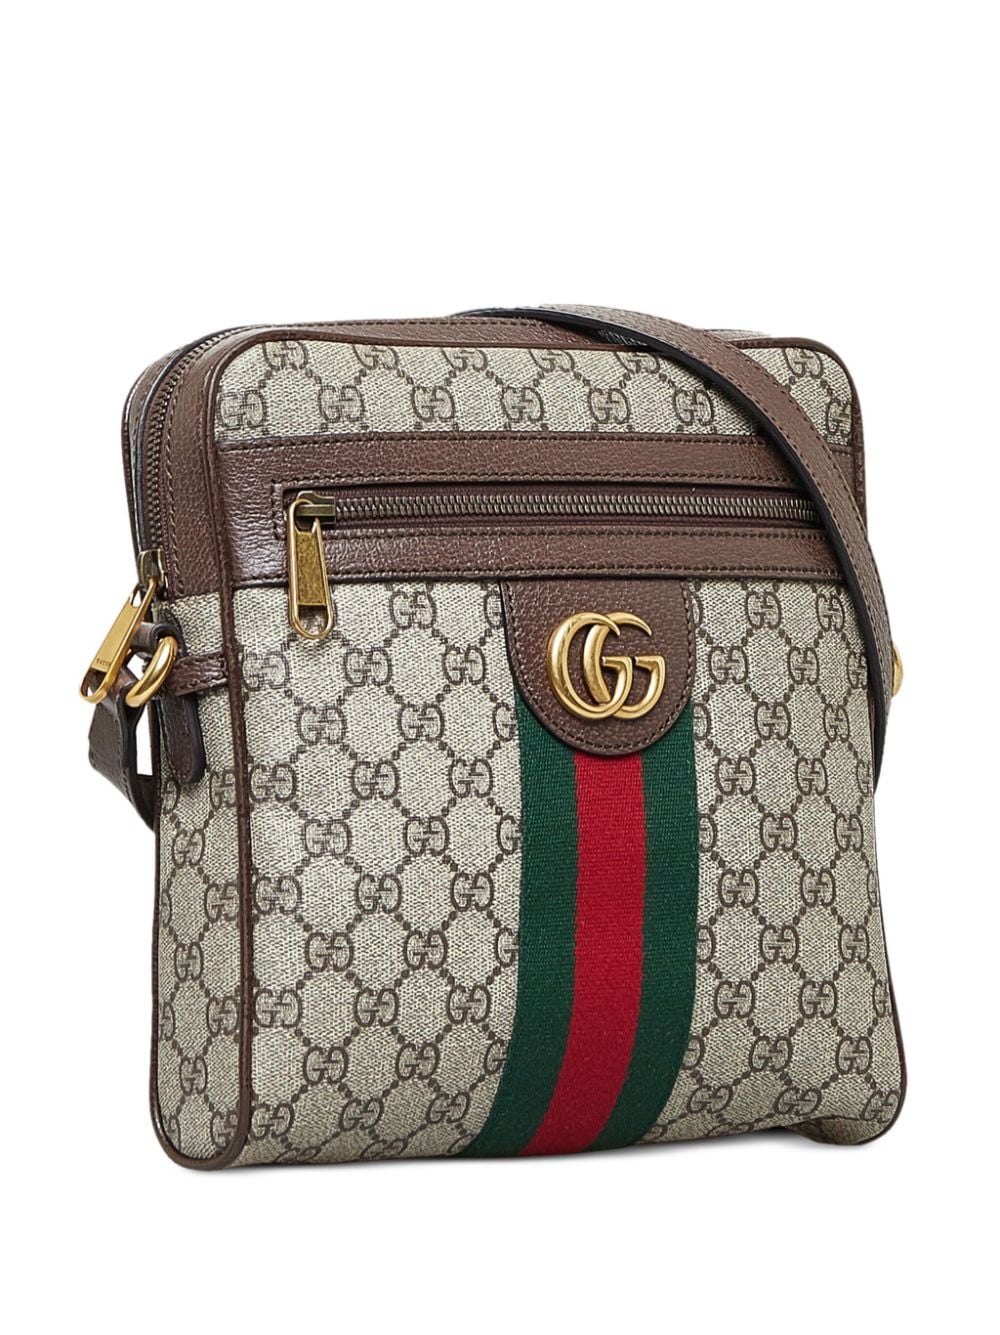 Gucci Ophidia GG Supreme Small Shoulder Bag - Farfetch